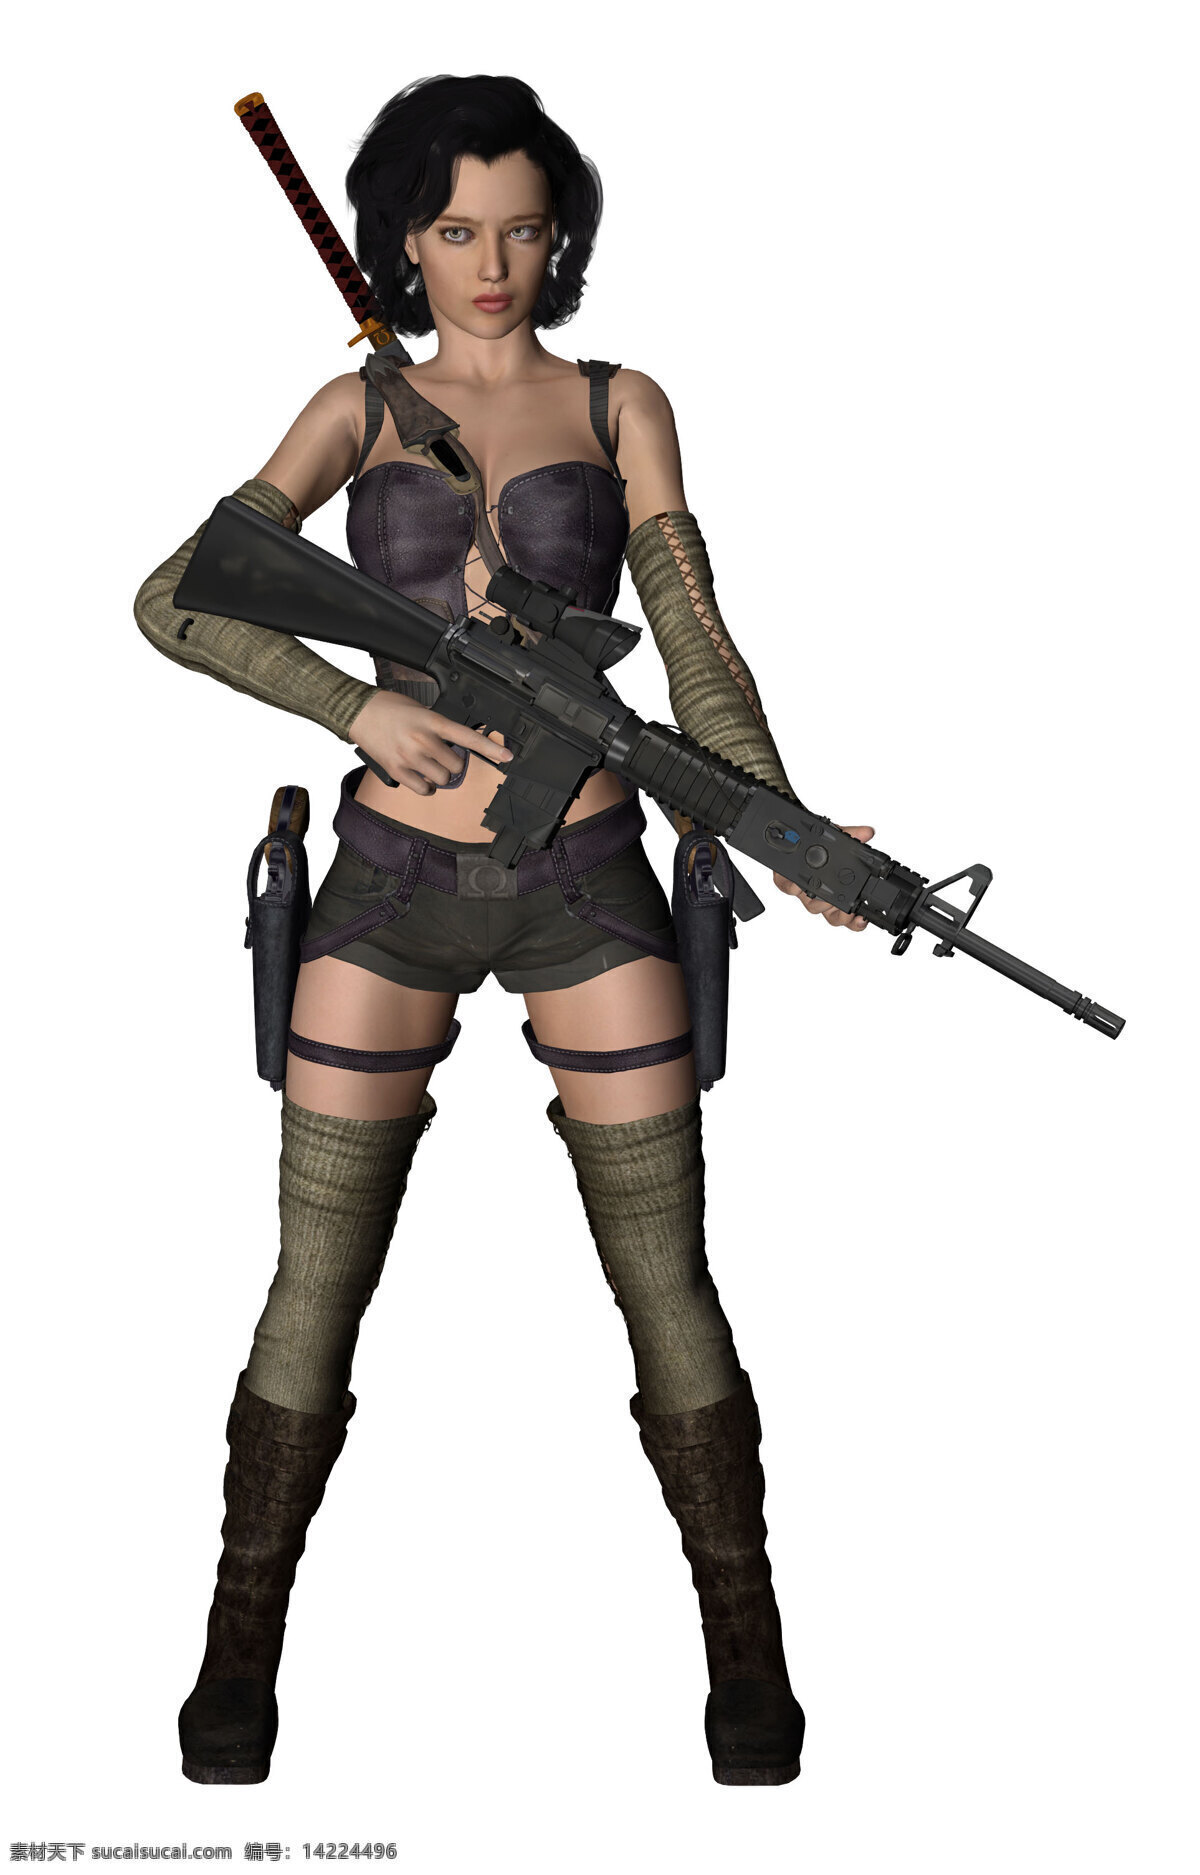 女子特战队员 3d 拿枪 打枪 模型 人物 美女 3d模特 3dmm 女子特战 3d人物 3d设计